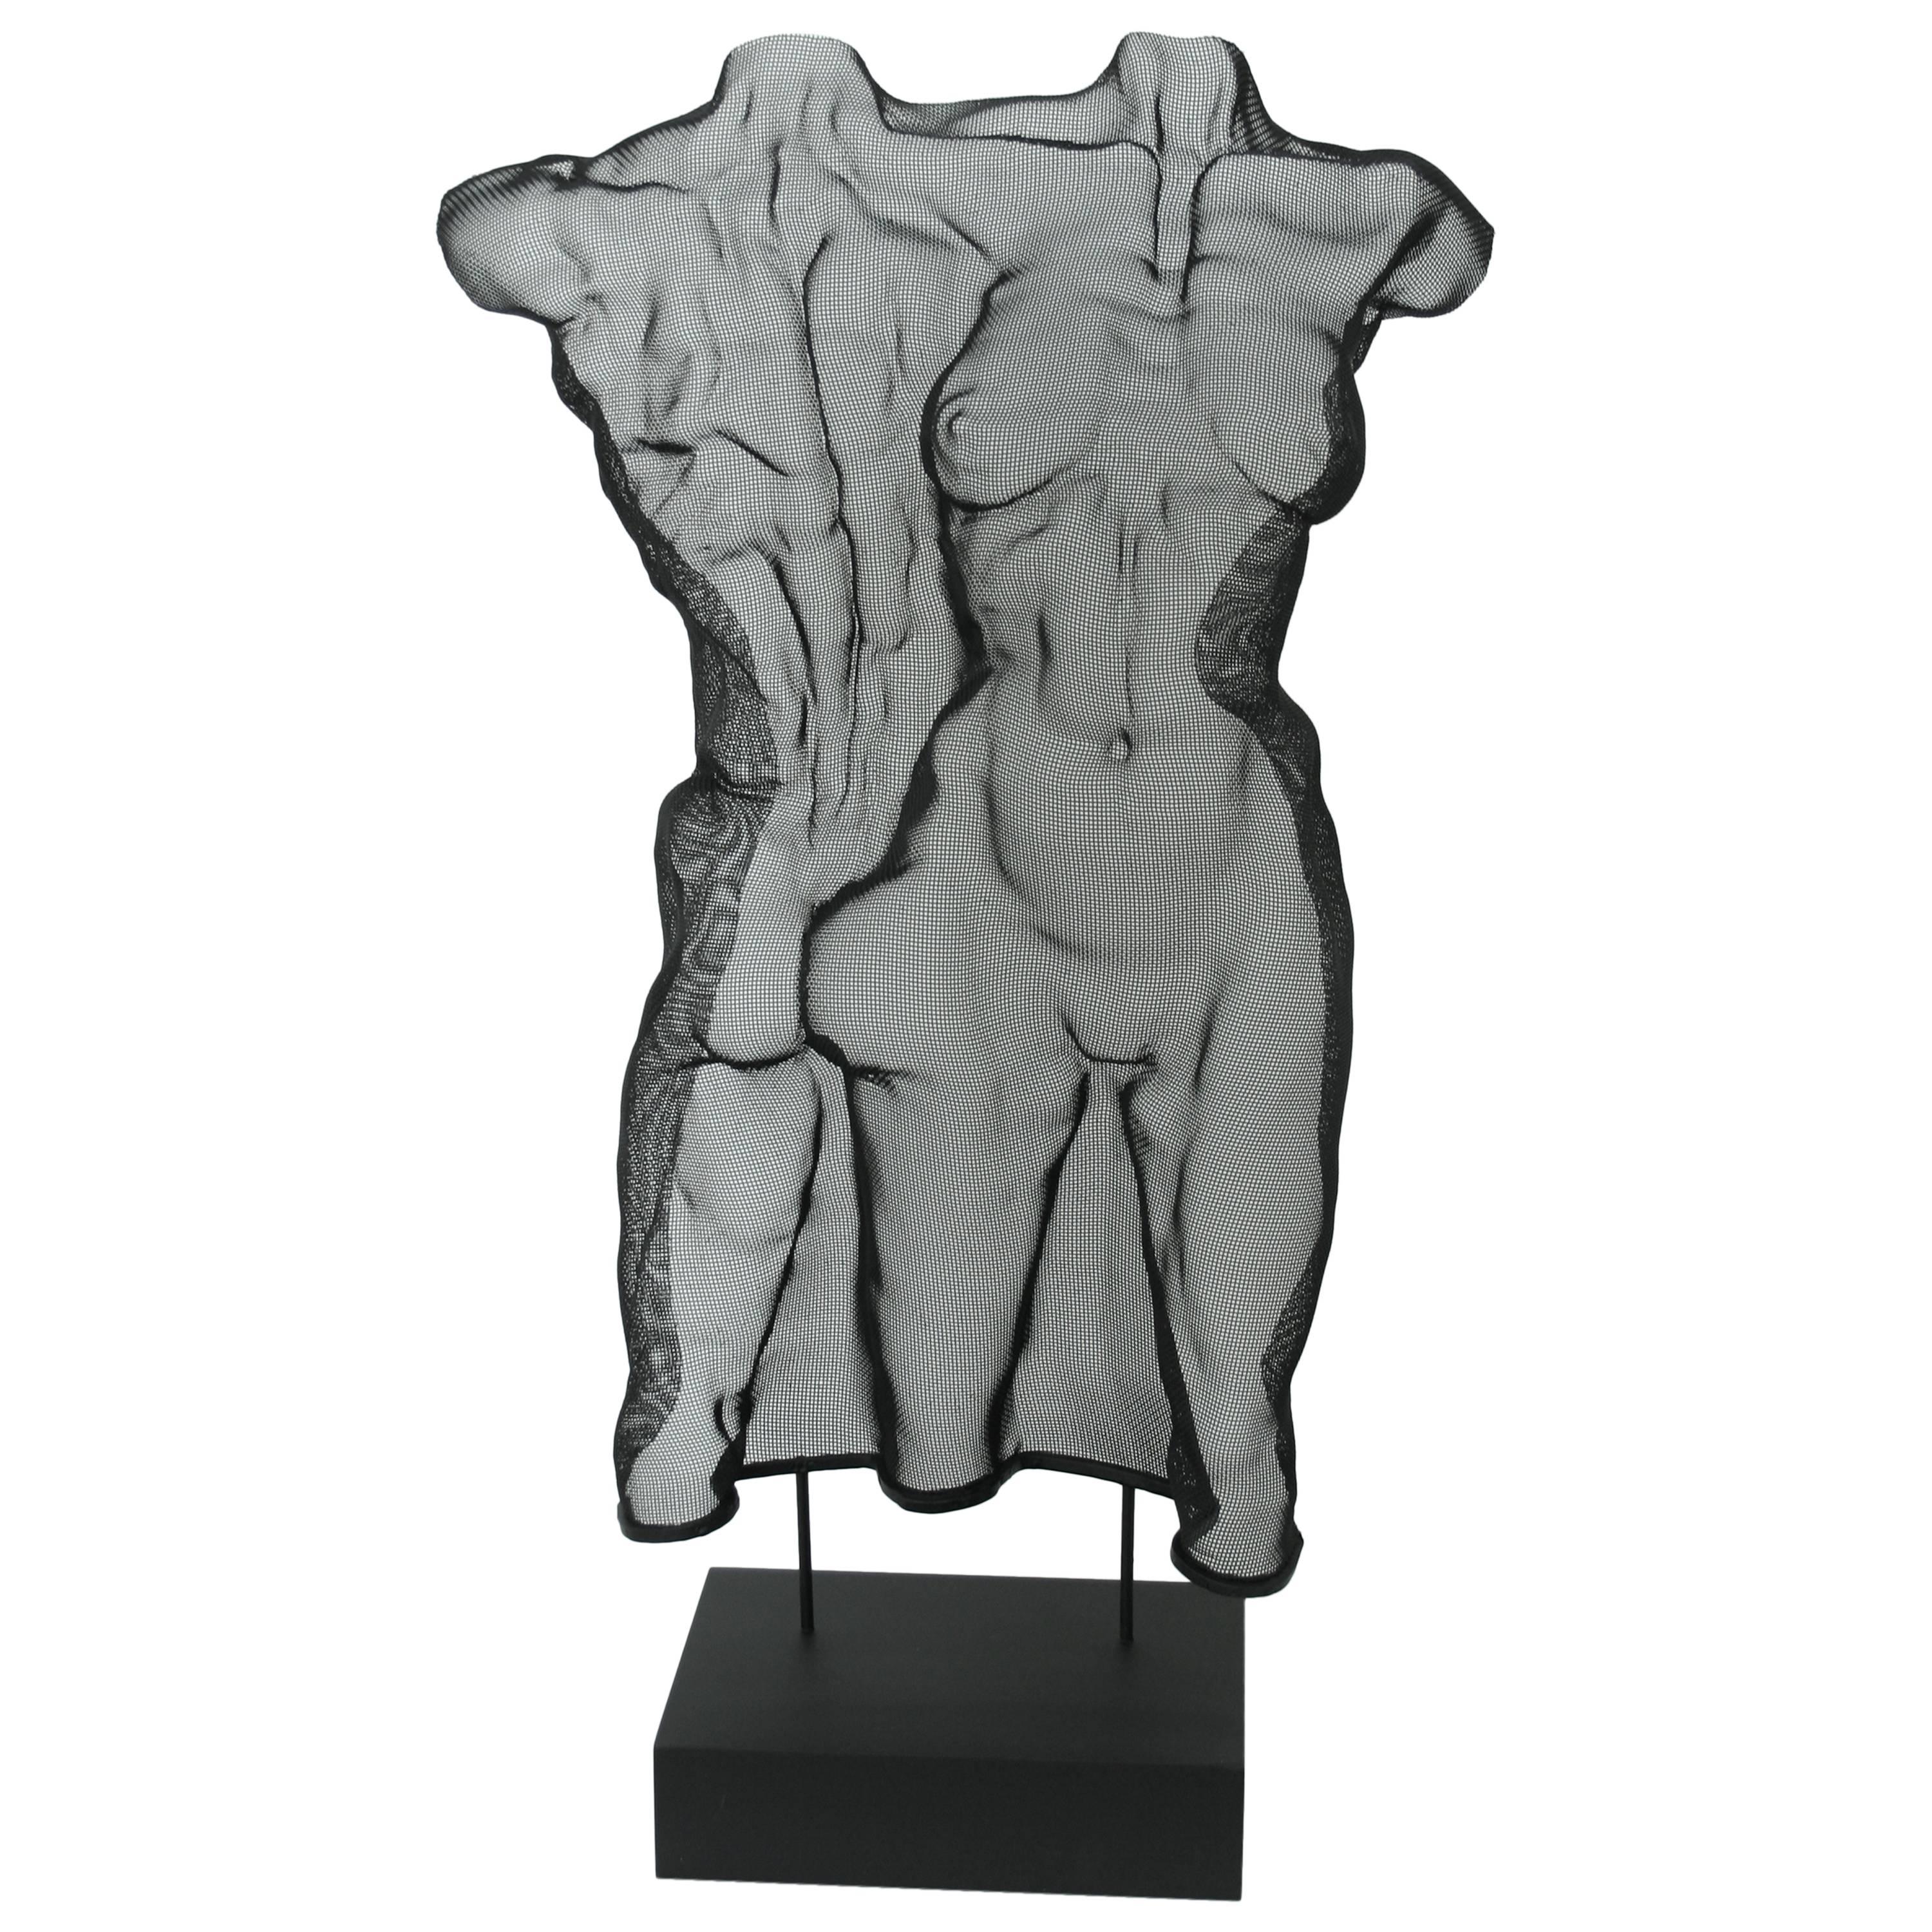 "Backtofront" Unique Steel Mesh Sculpture